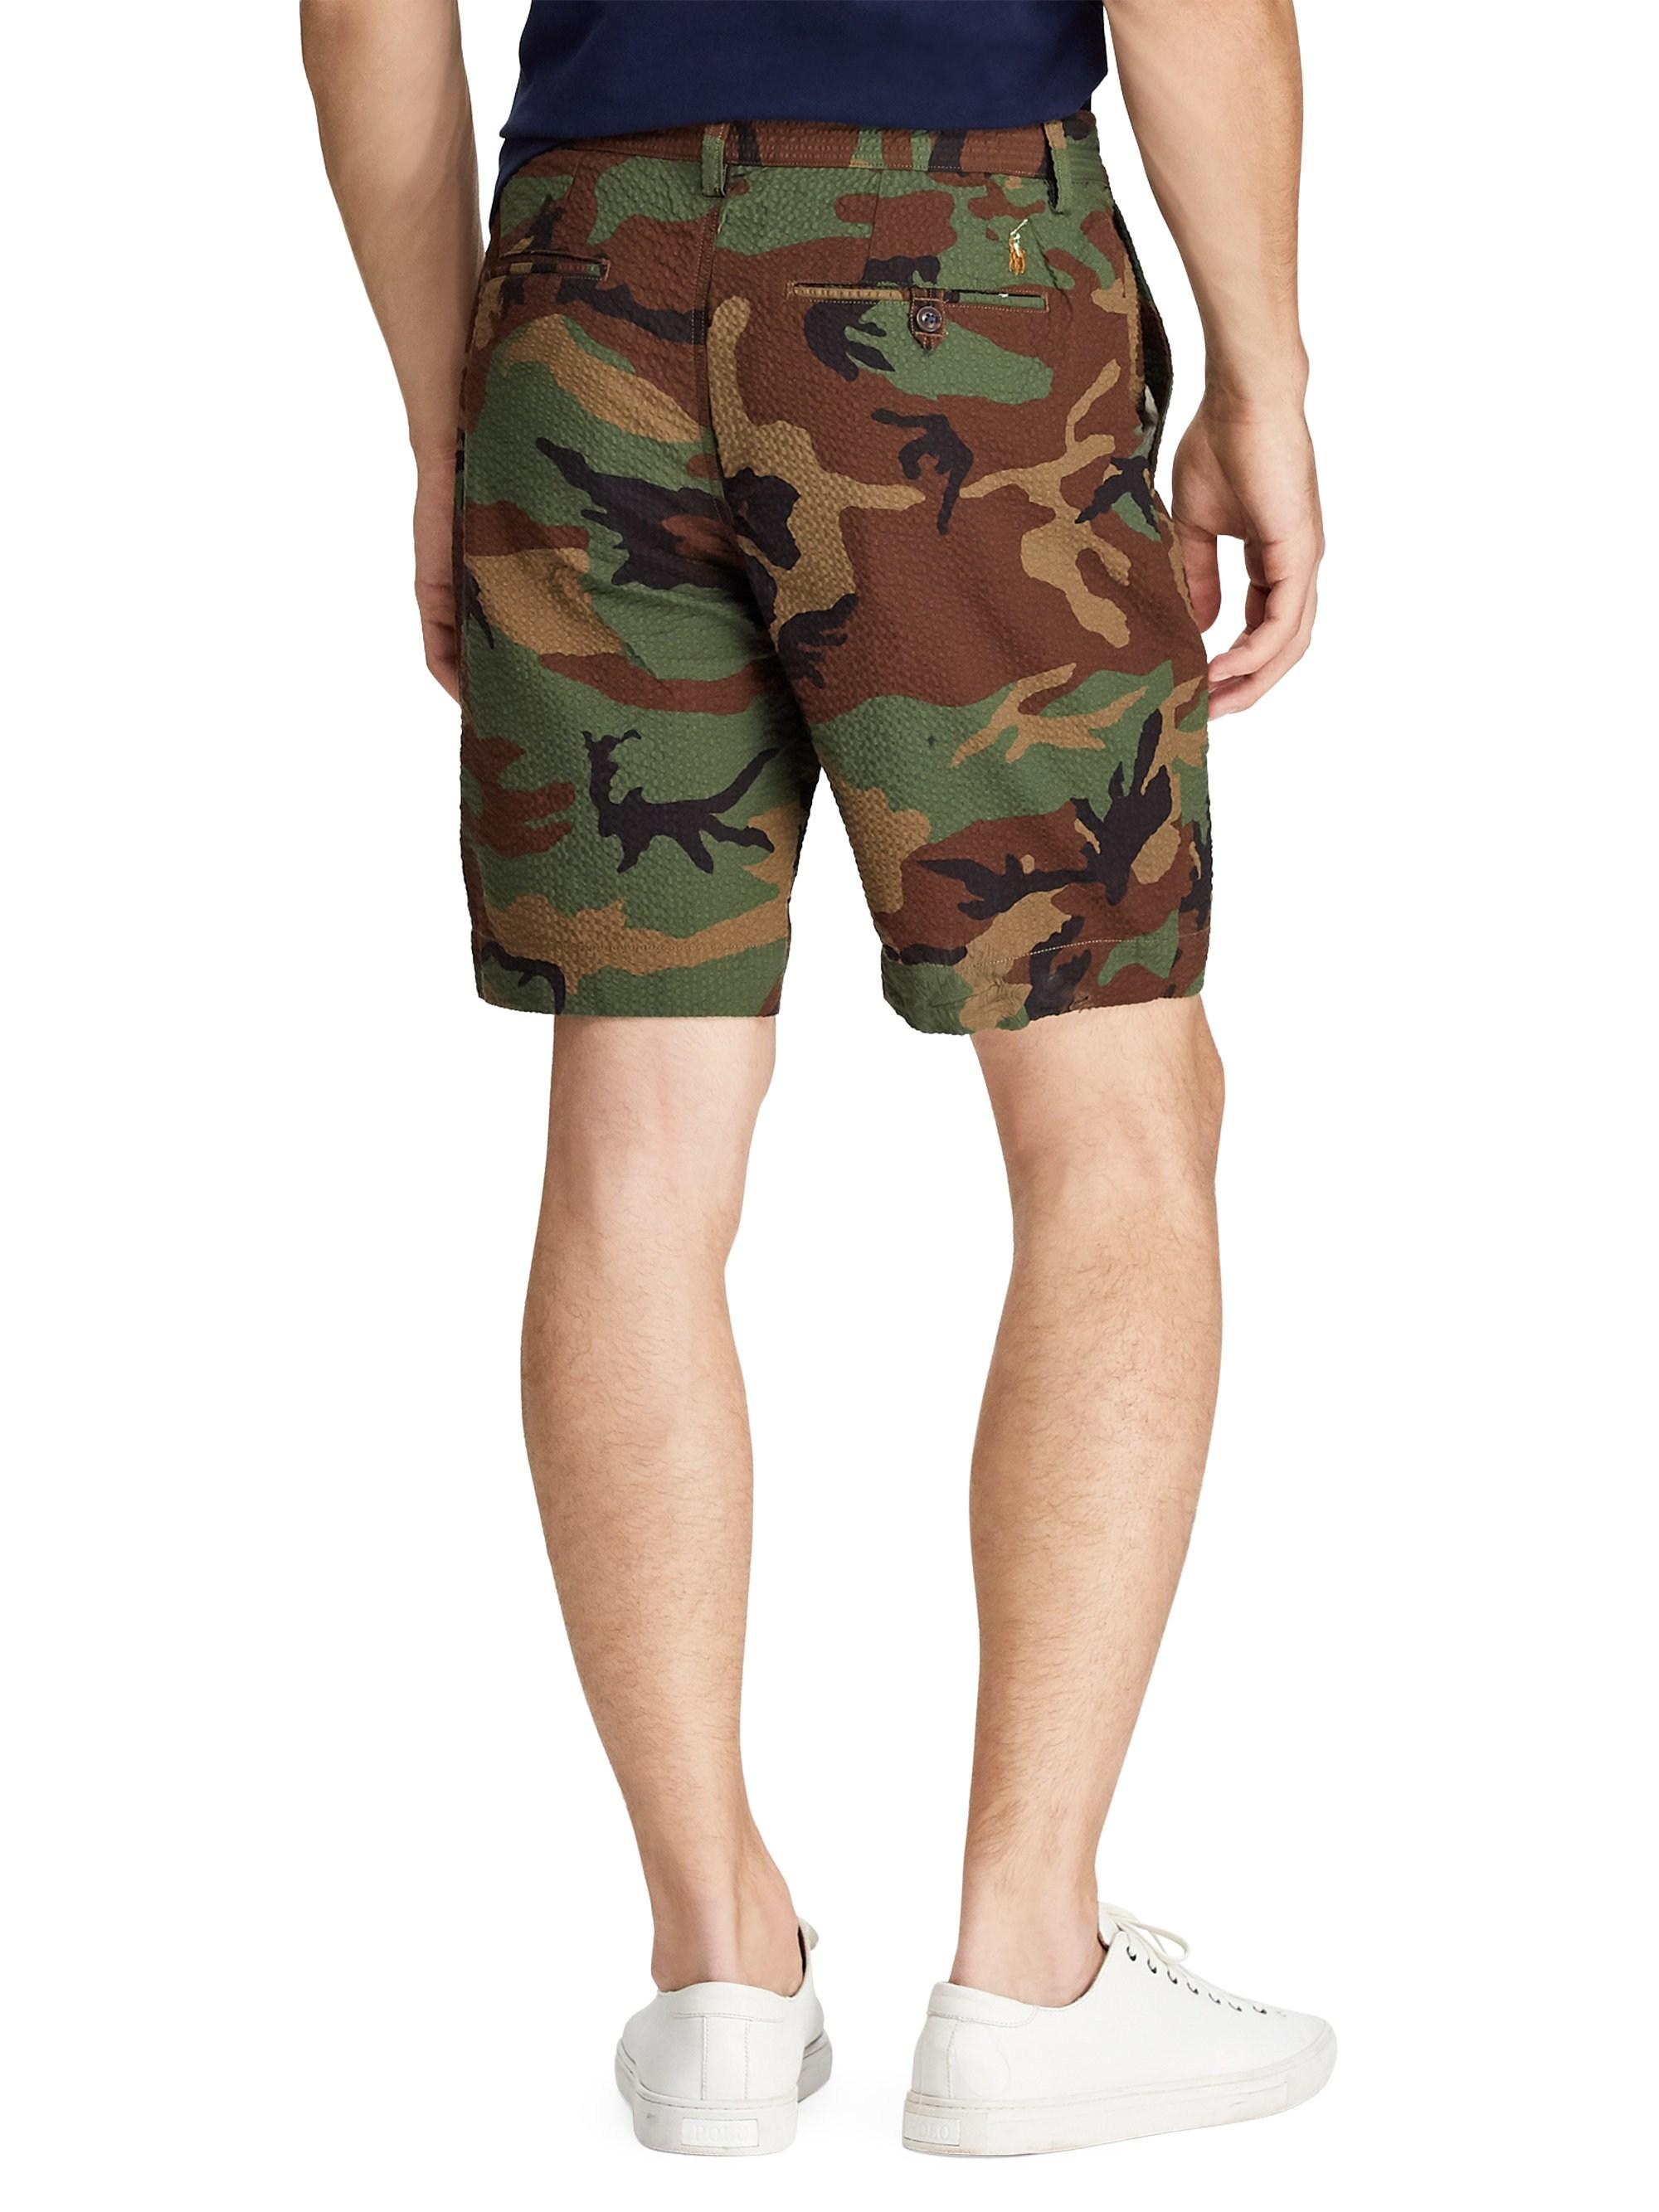 Lyst - Polo Ralph Lauren Men's Seersucker Camouflage Flat Shorts - Camo ...